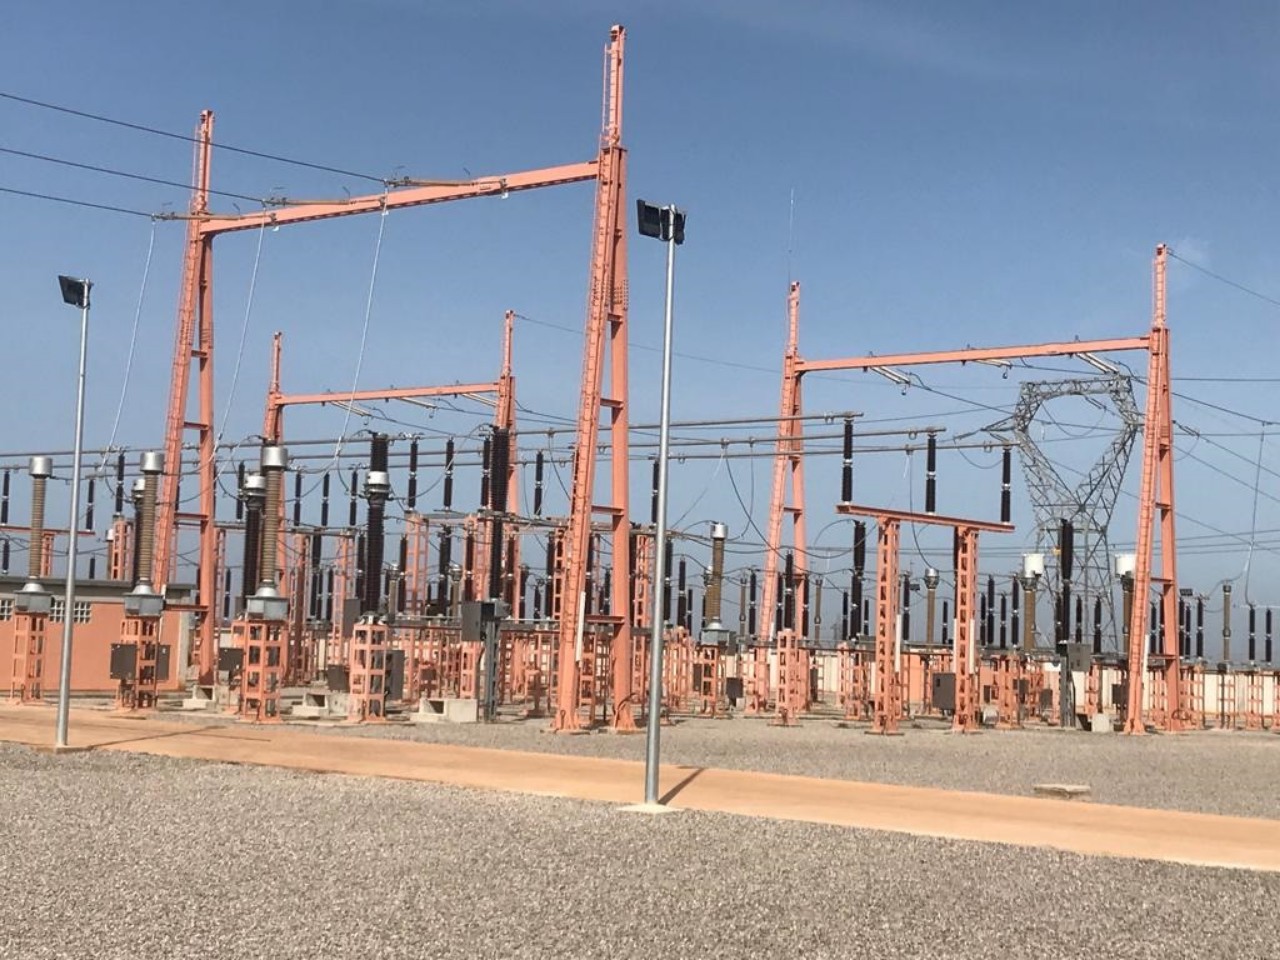 انقطاع الكهرباء في ودية المغرب والبرازيل يوقع منبرا إعلاميا في المحظور